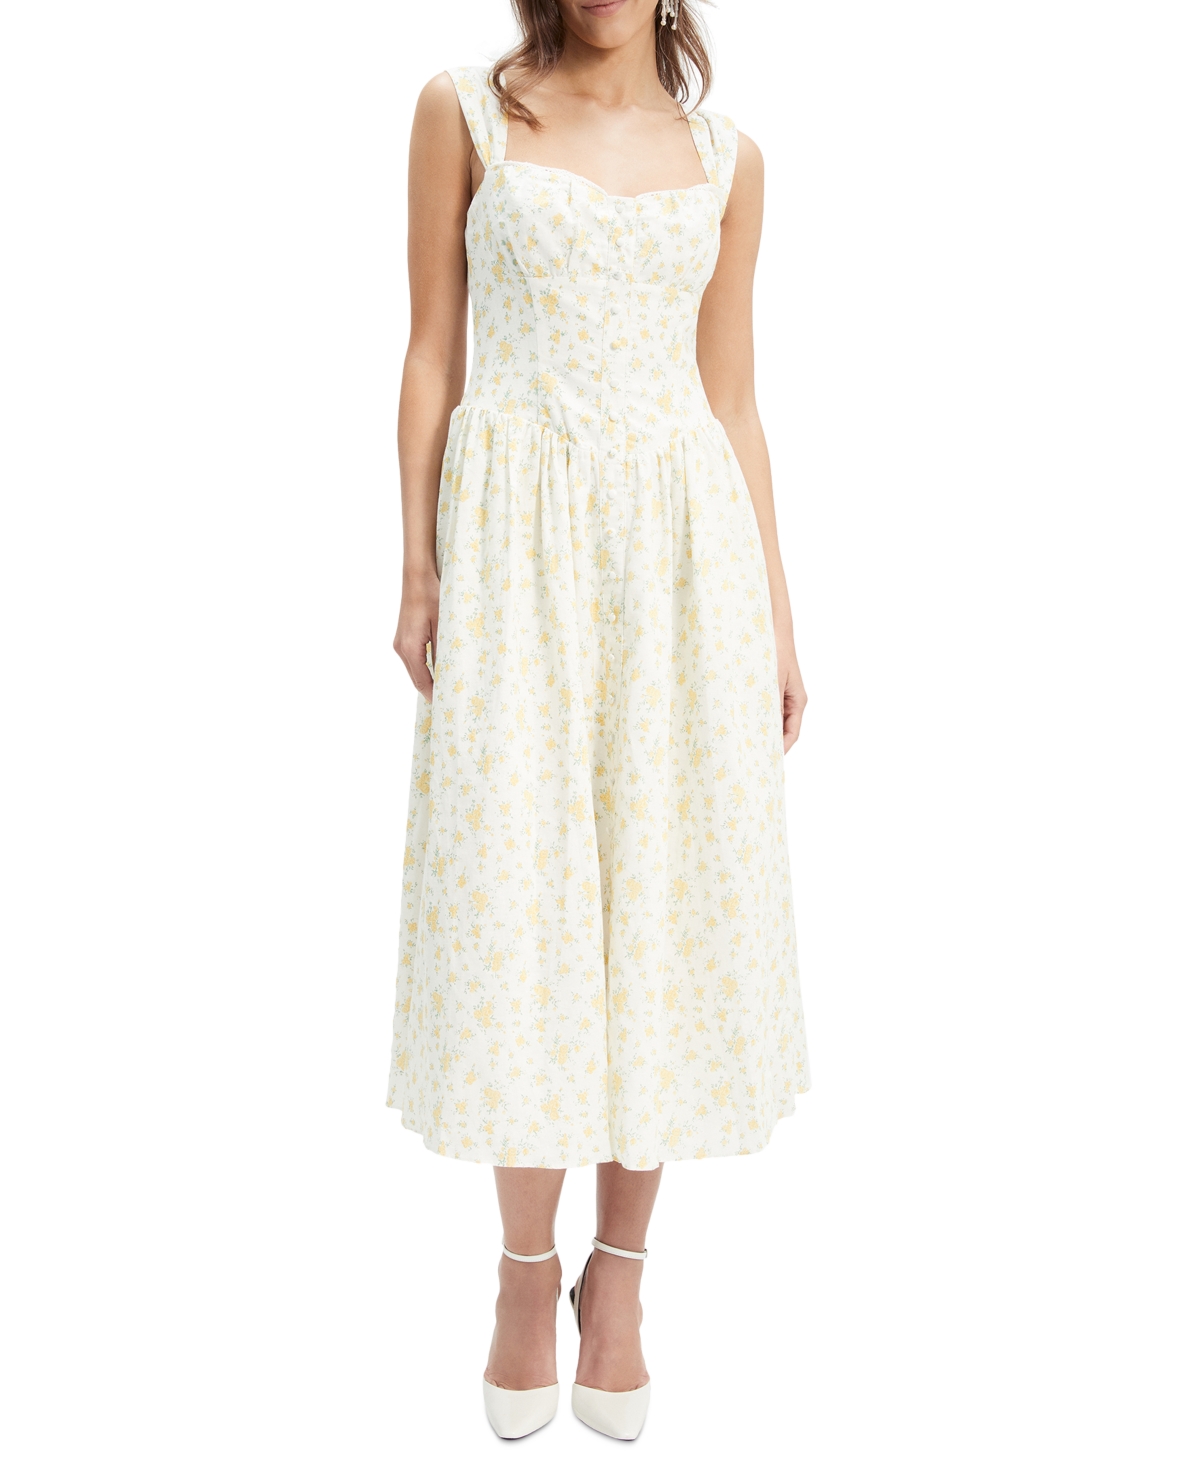 Women's Malea Floral-Print Lace-Trim A-Line Dress - Yellow Floral